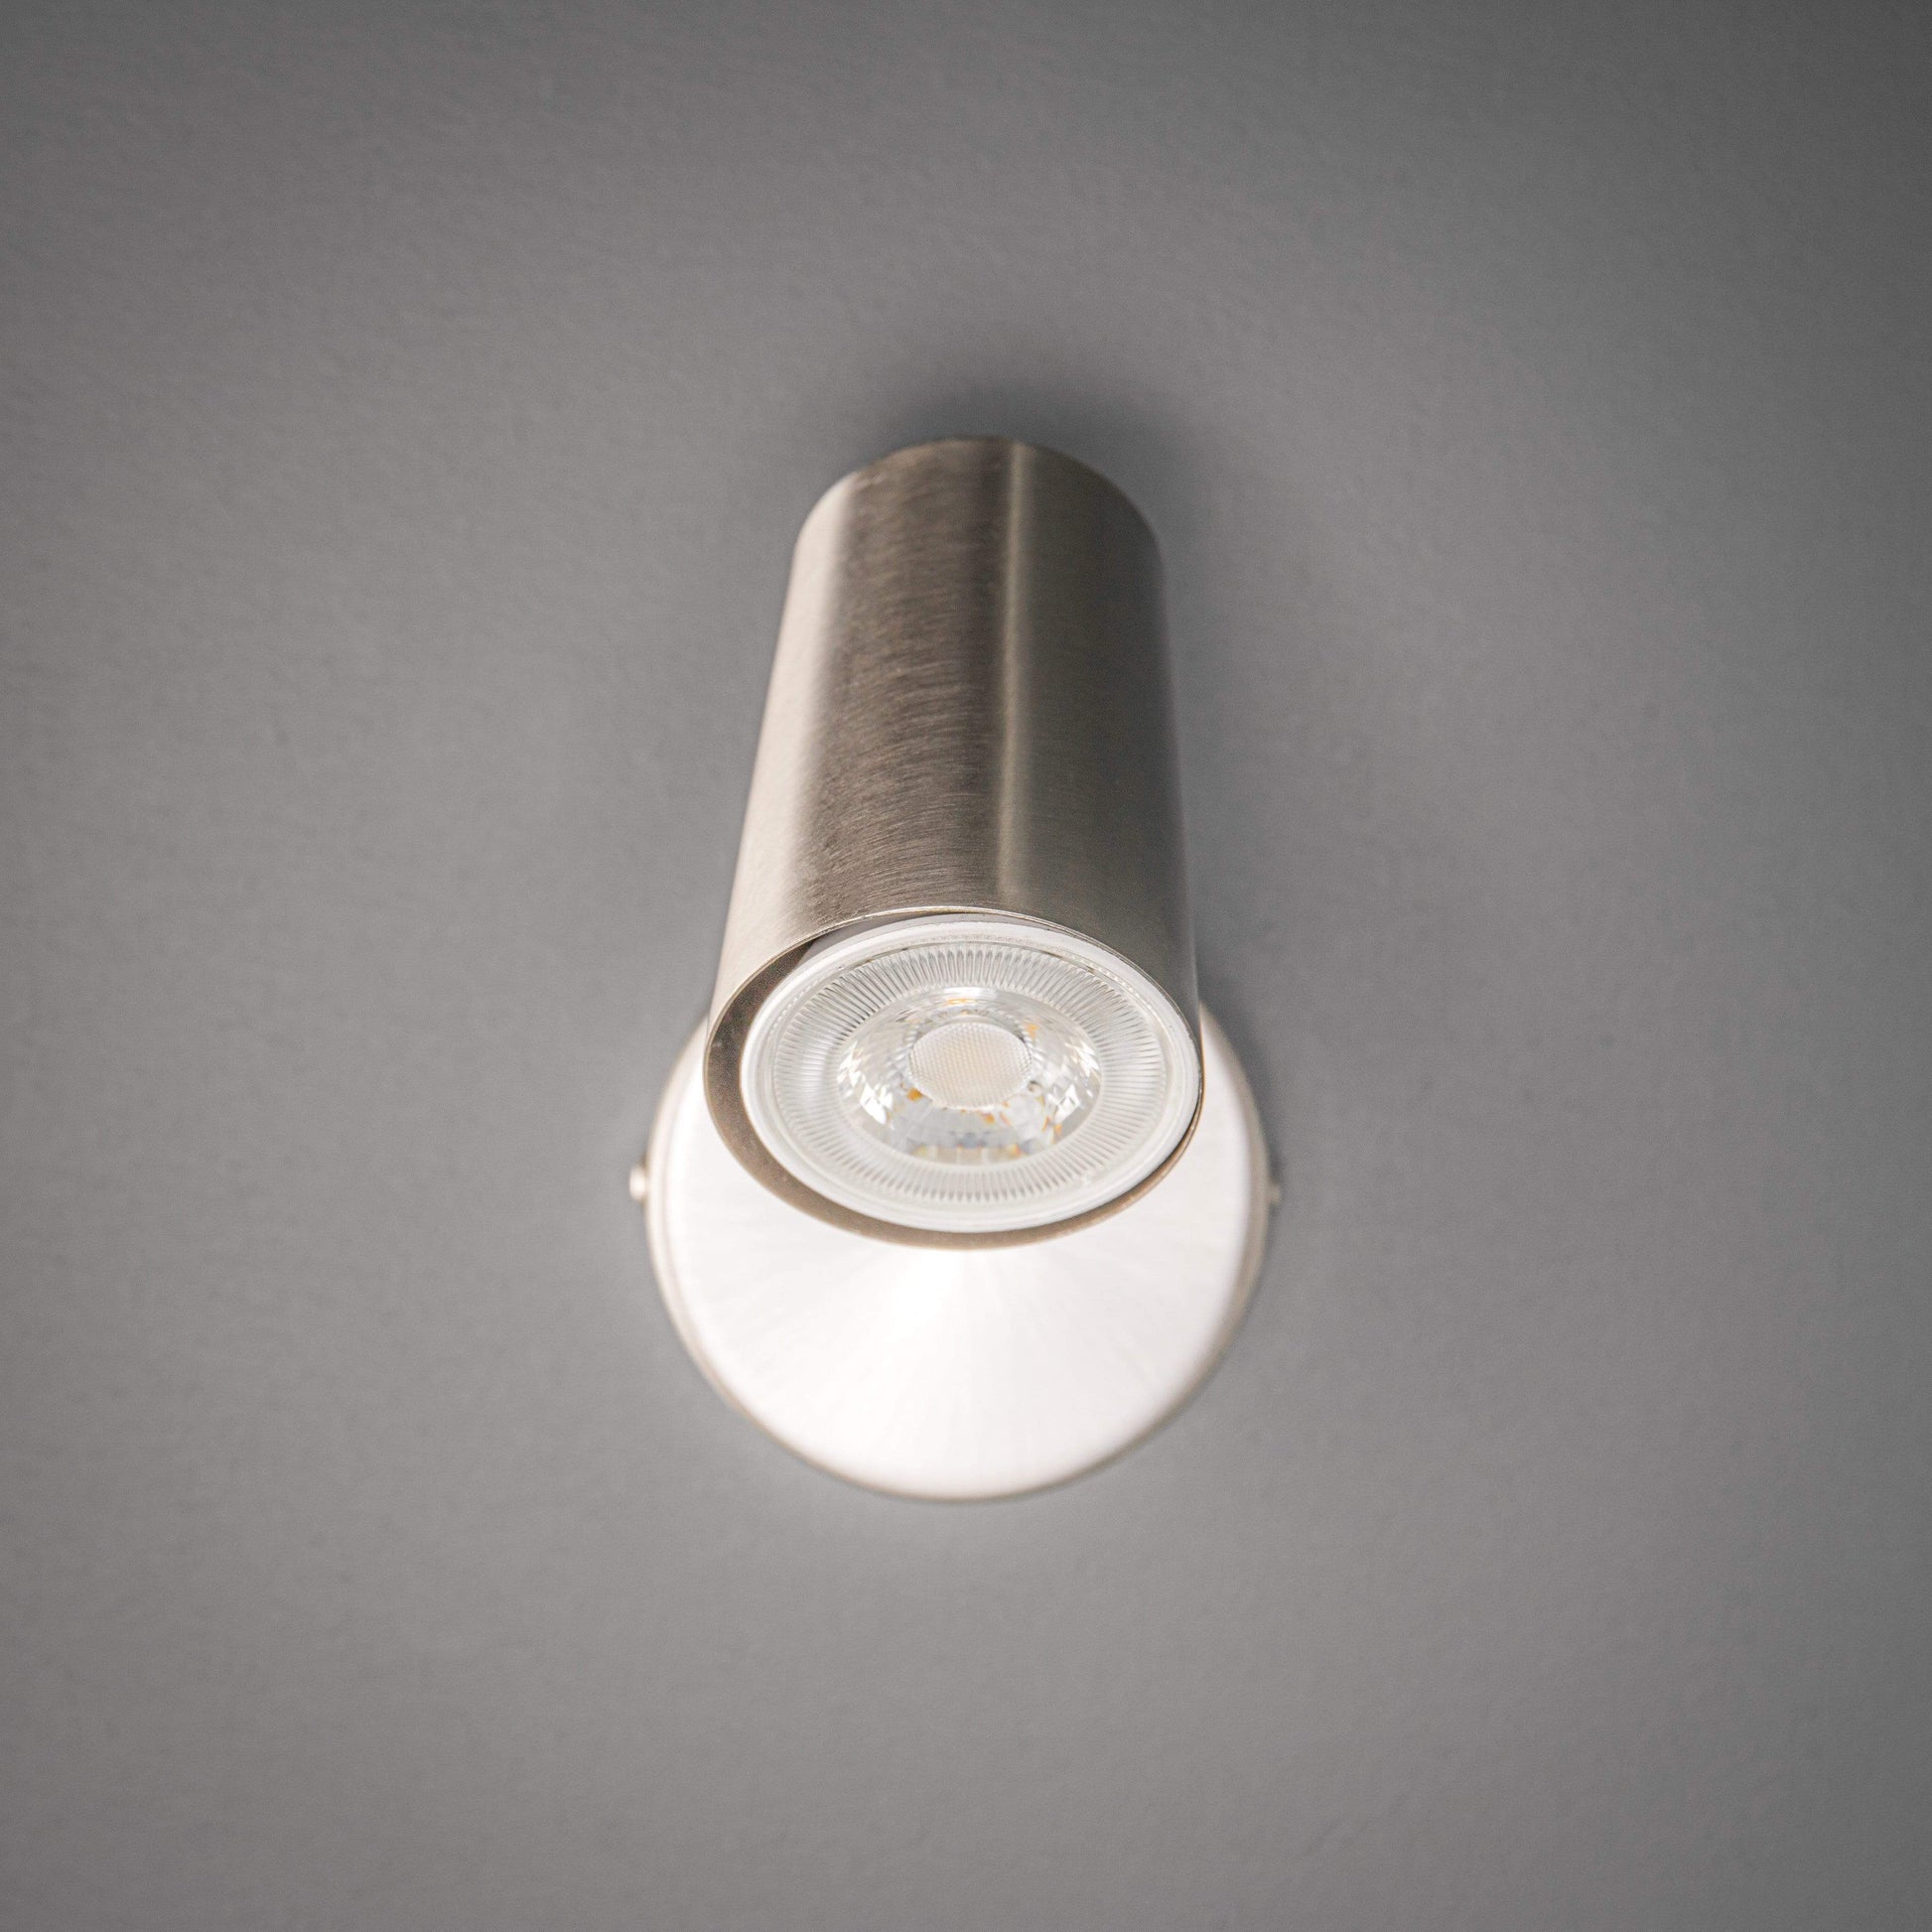 Lights  -  Forum Lighting Harvey Single Spotlight Satin Nickel Ceiling Light  -  50148223